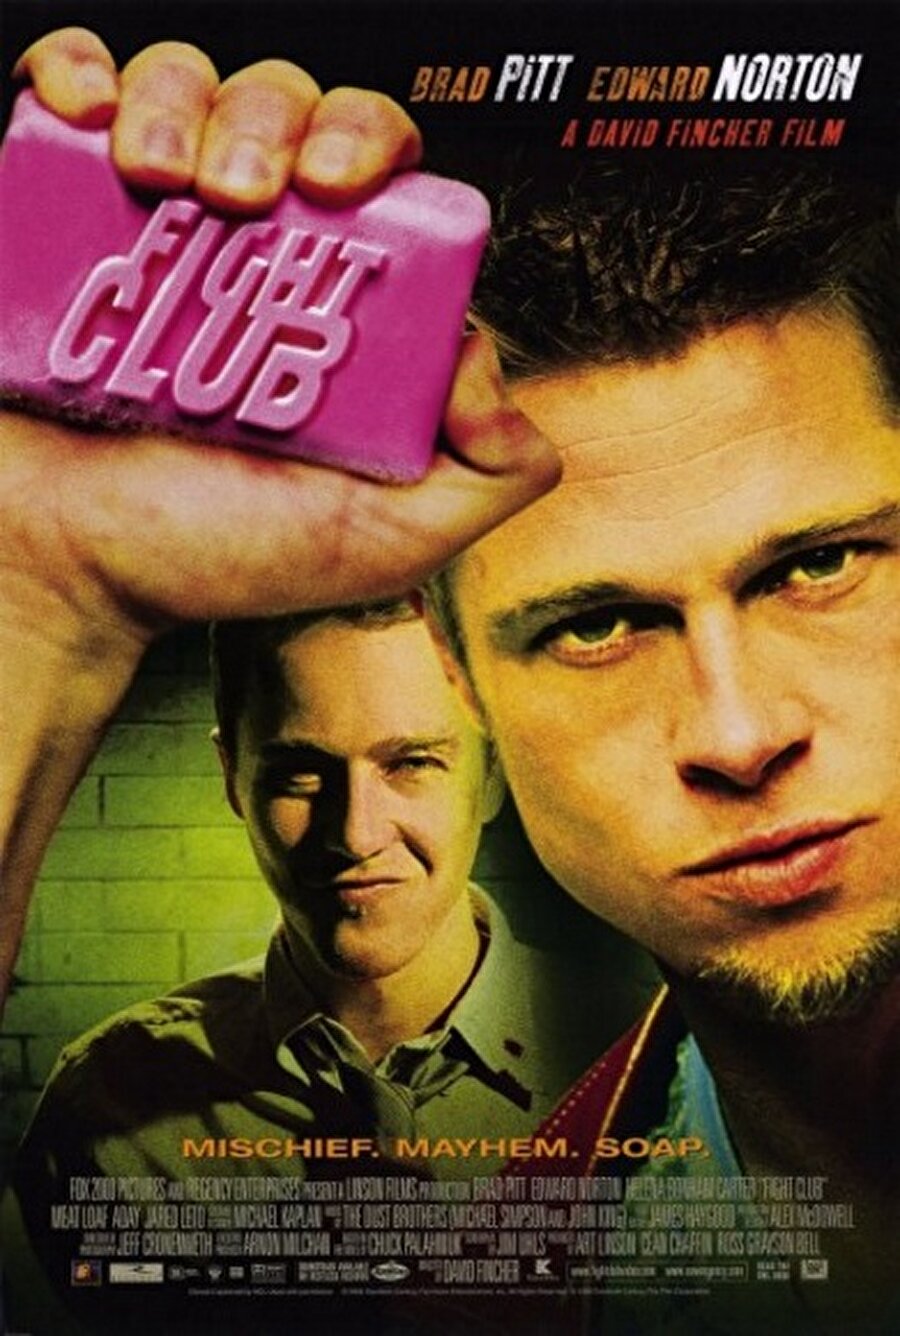 Dövüş Kulübü (Fight Clup) - 1999
Aynı isimli kitaptan uyarlama olan film tam bir başyapıt olarak gösterilmektedir. Konusu ise Jack'in sorunlu çocukluğundan kaynaklanan çift karakterli psikozu, onu çağdaş dünya düzeninin banka hesapları, kredi kartları, beyaz yakalı beyni uyuşturulmuş çalışanlar, sürekli tüketimi özendiren reklamlar vb. öğelerine başkaldırarak bir yıkım planı başlatmaya kadar götürmüştür.